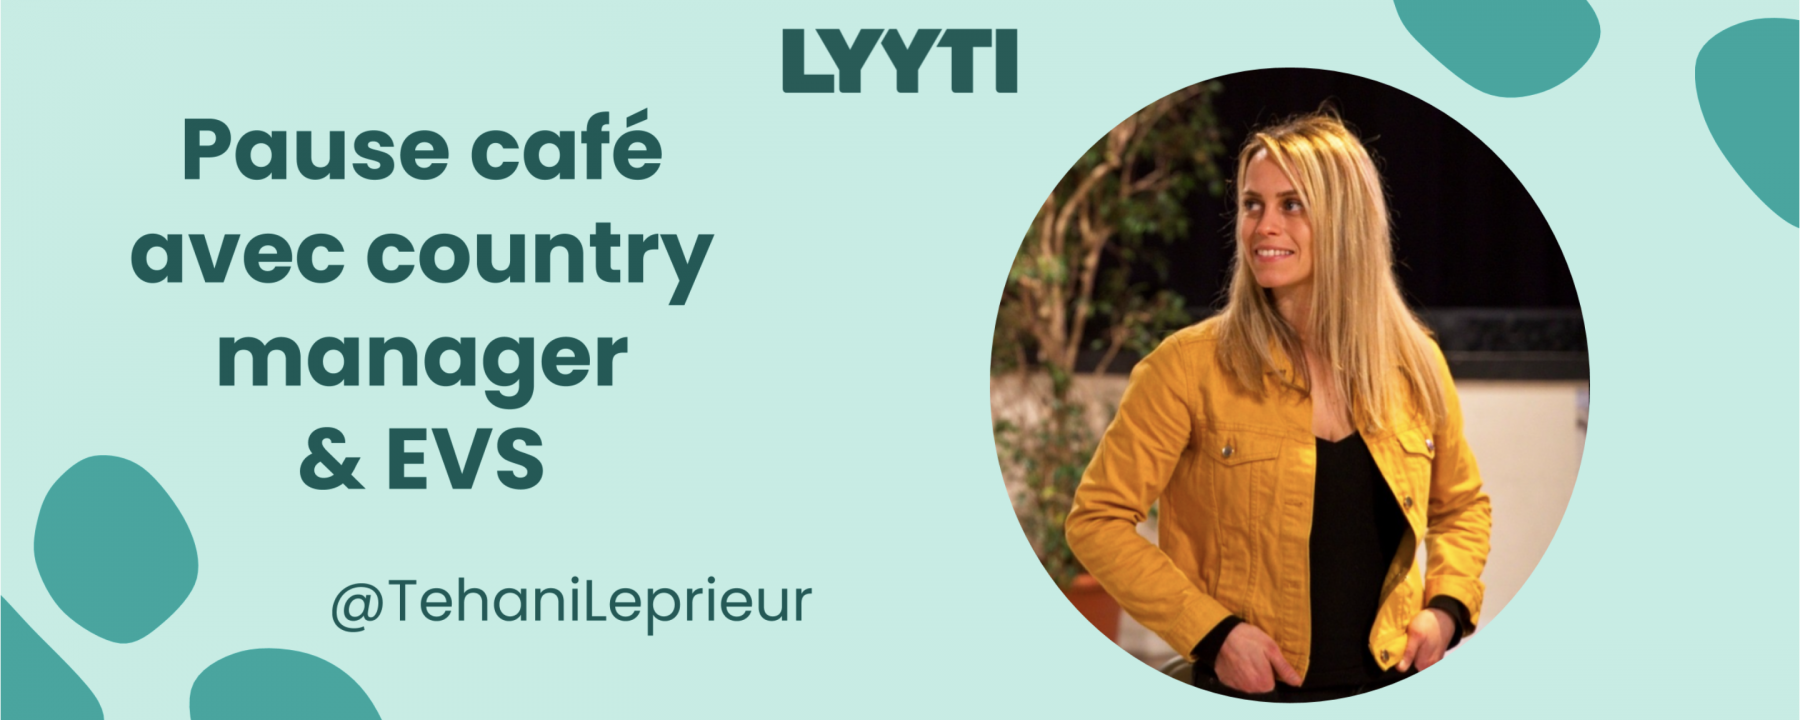 Pause café avec country manager & EVS, webinar organisé par Lyyti le 21 janvier